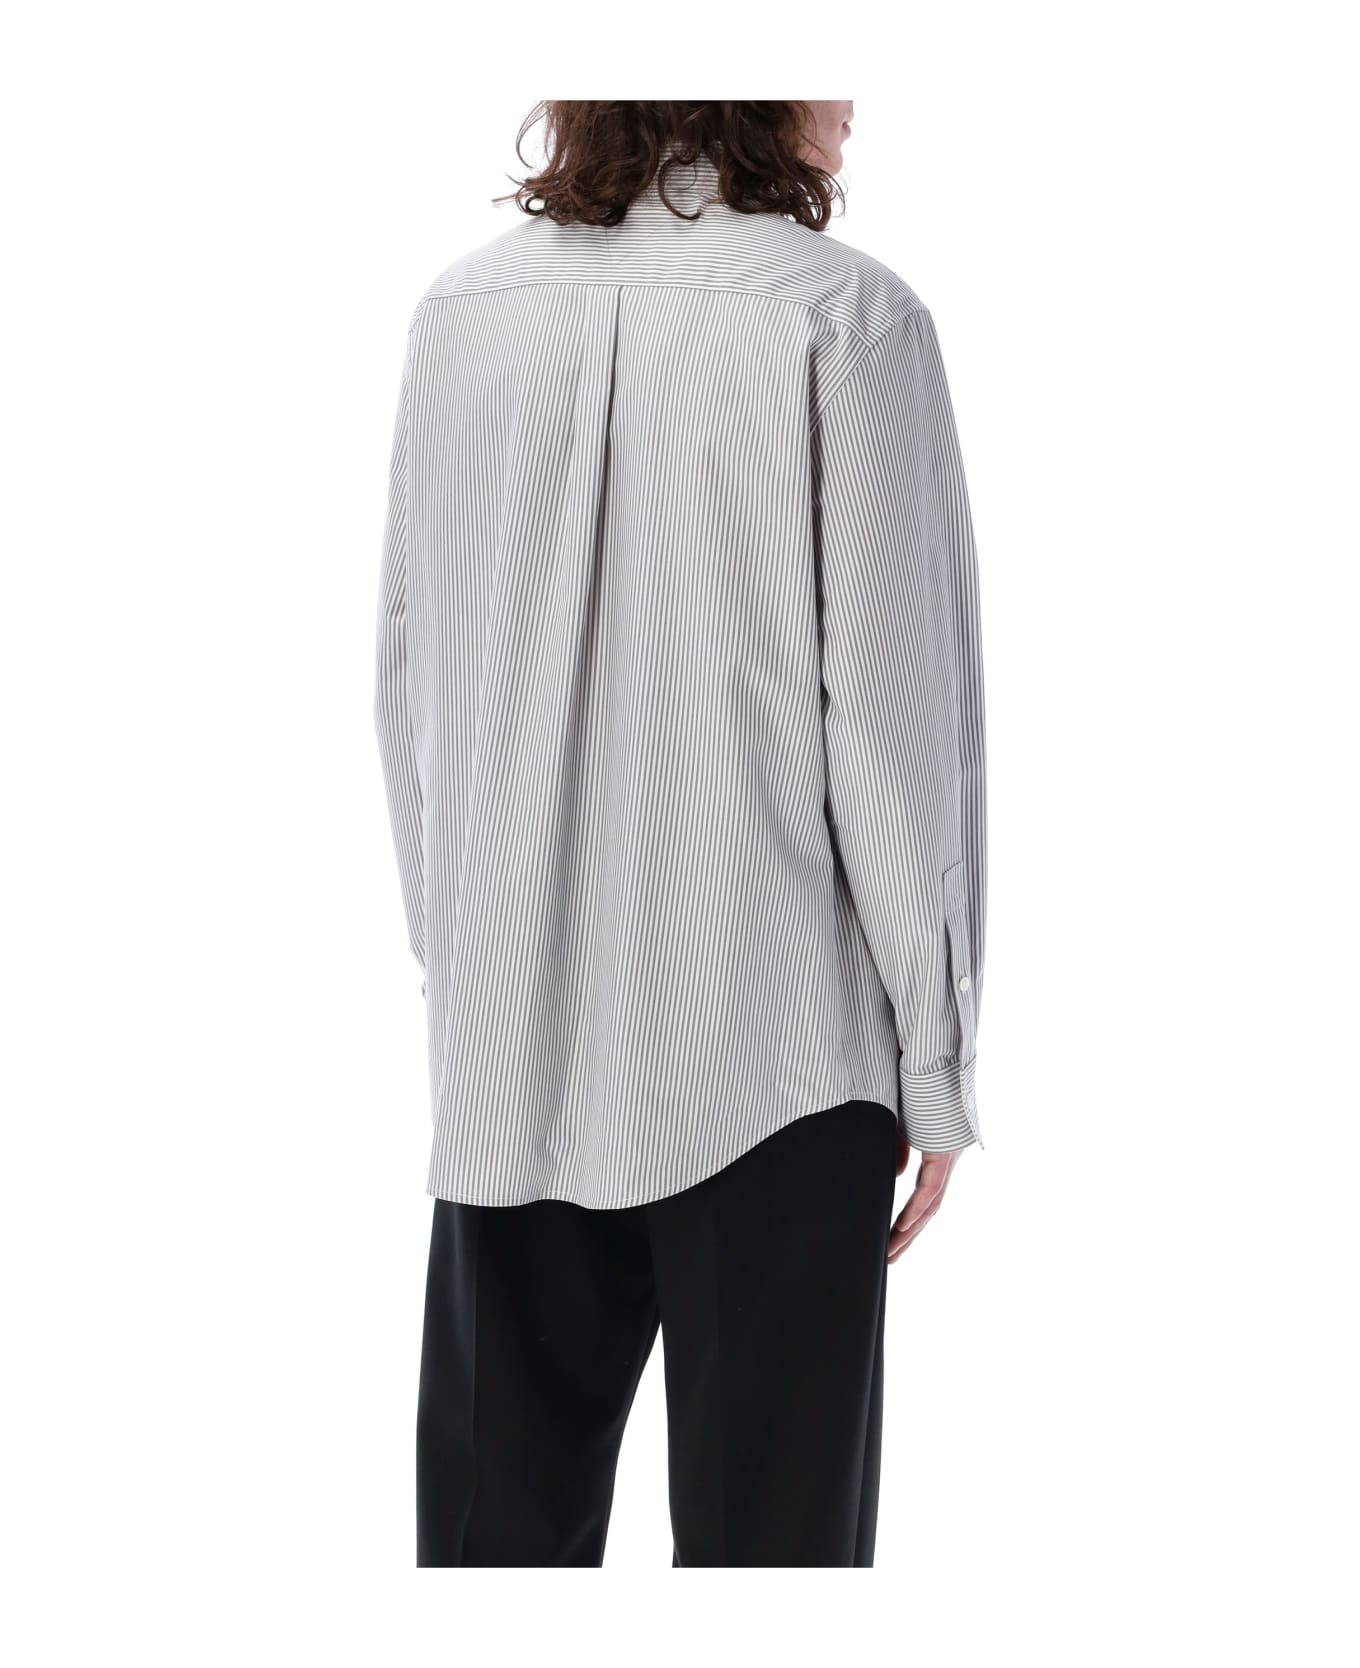 Bottega Veneta Shirt Stripes - GREY WHITE STRIPES シャツ